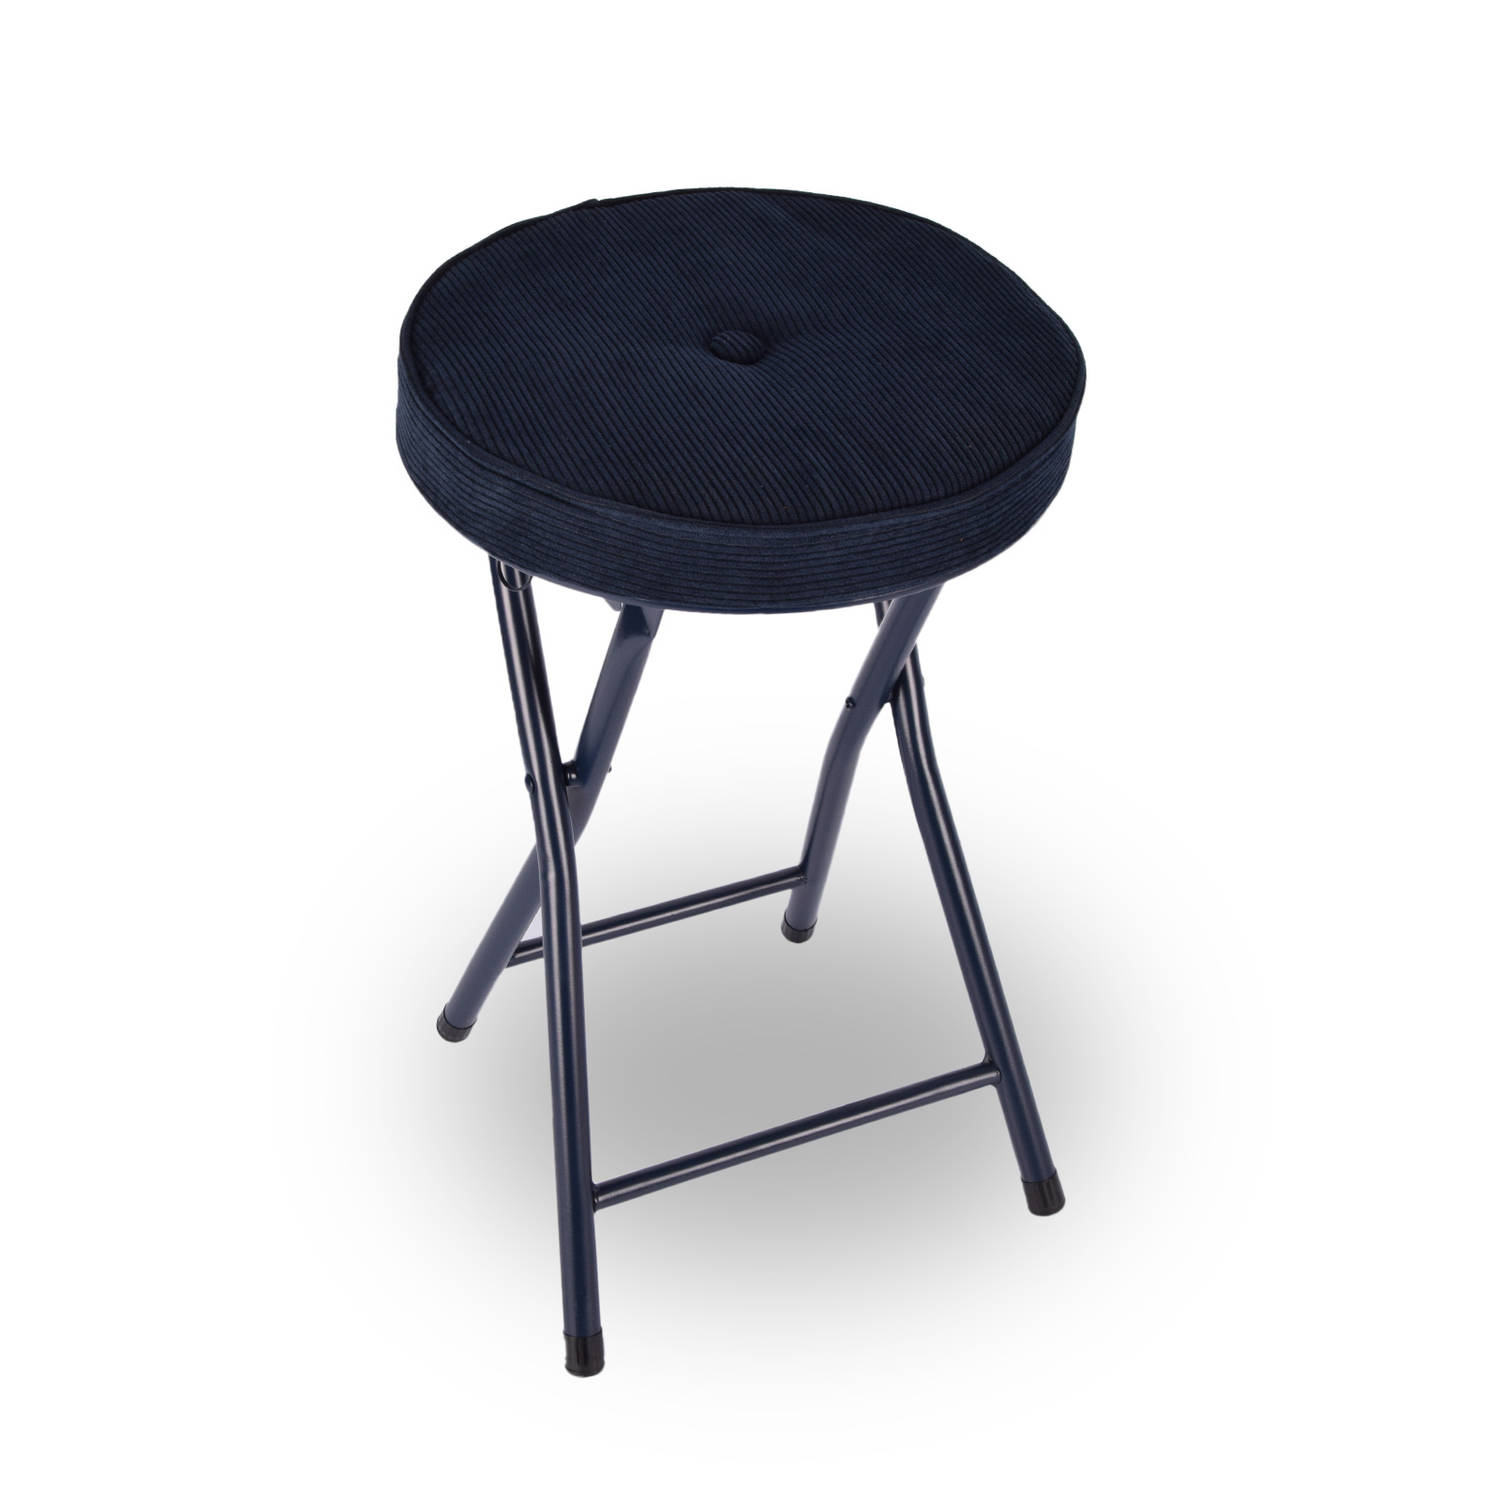 Klapstoel met zithoogte van 45 cm Vouwstoel velvet zitvlak stoel tafelstoel- RIBCORD tafelstoel klap